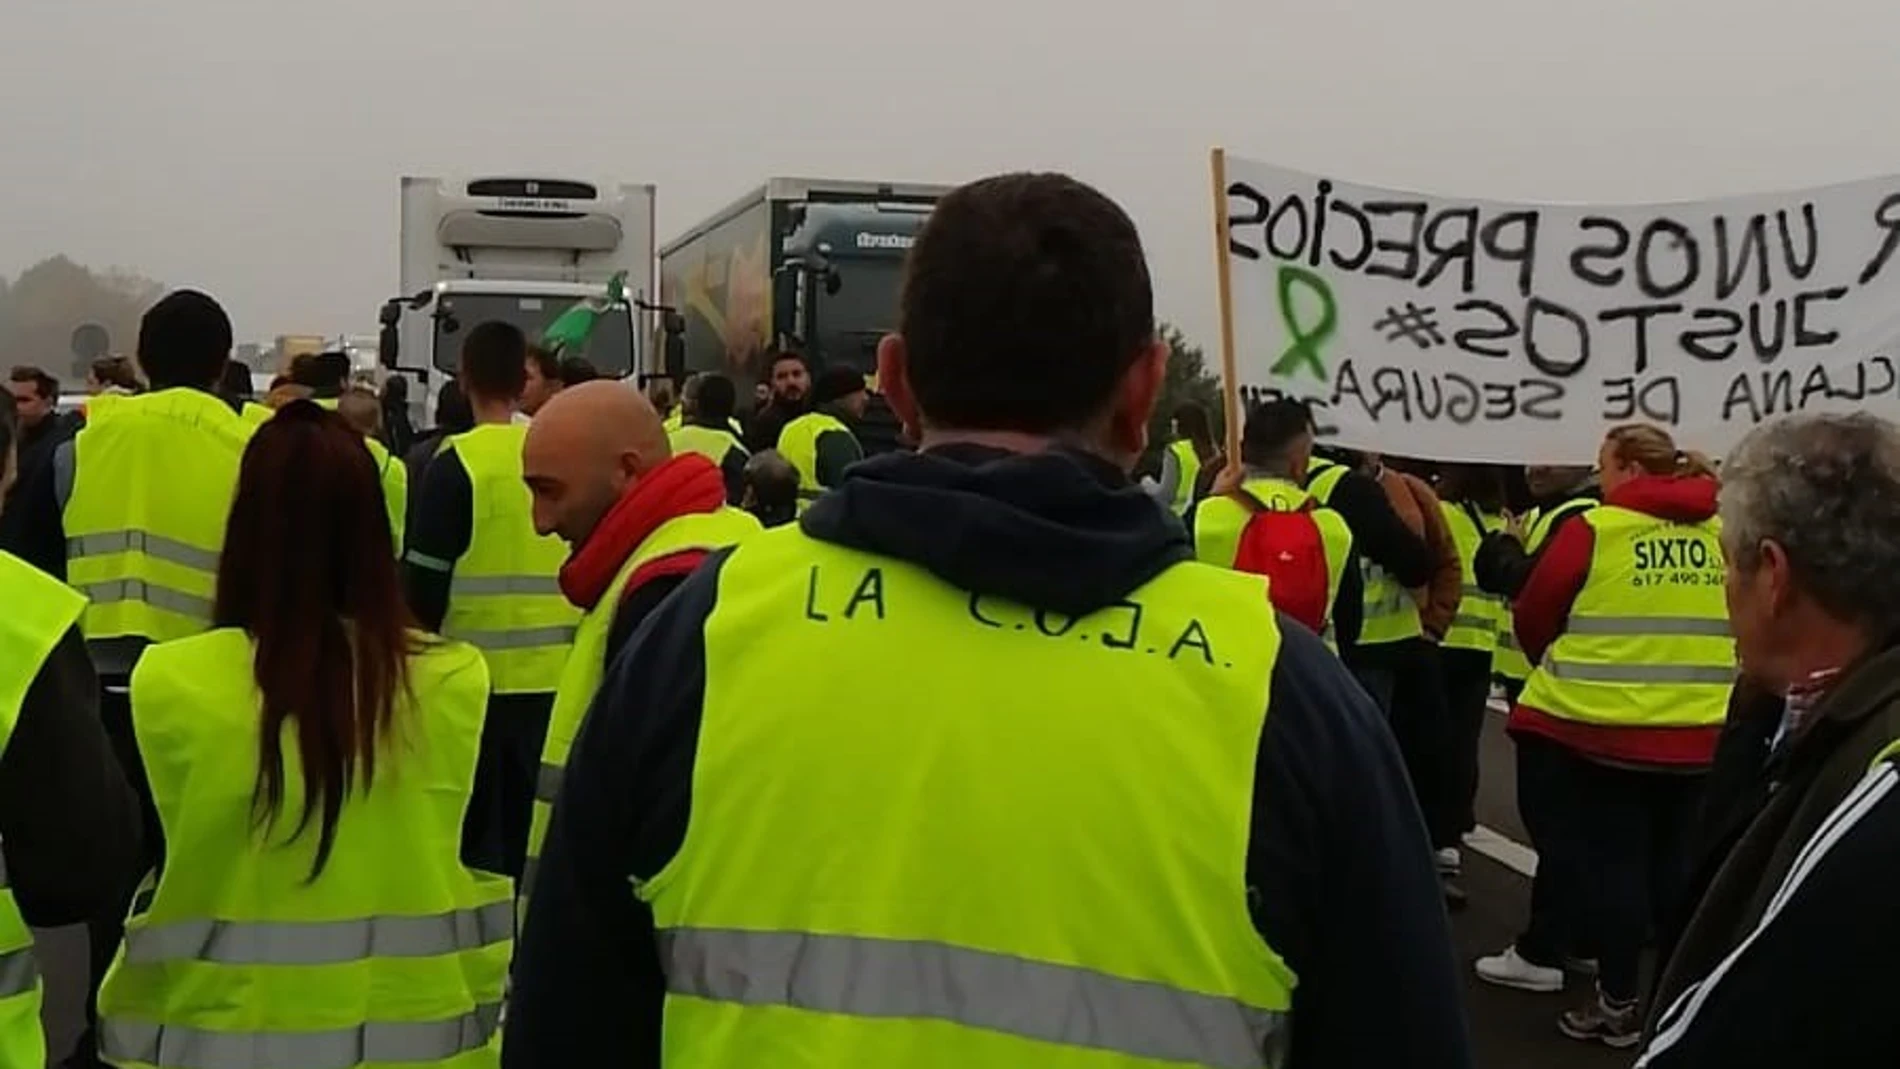 Córdoba.- Un grupo de agricultores corta el tráfico sin autorización en la A4 a la altura de Montoro